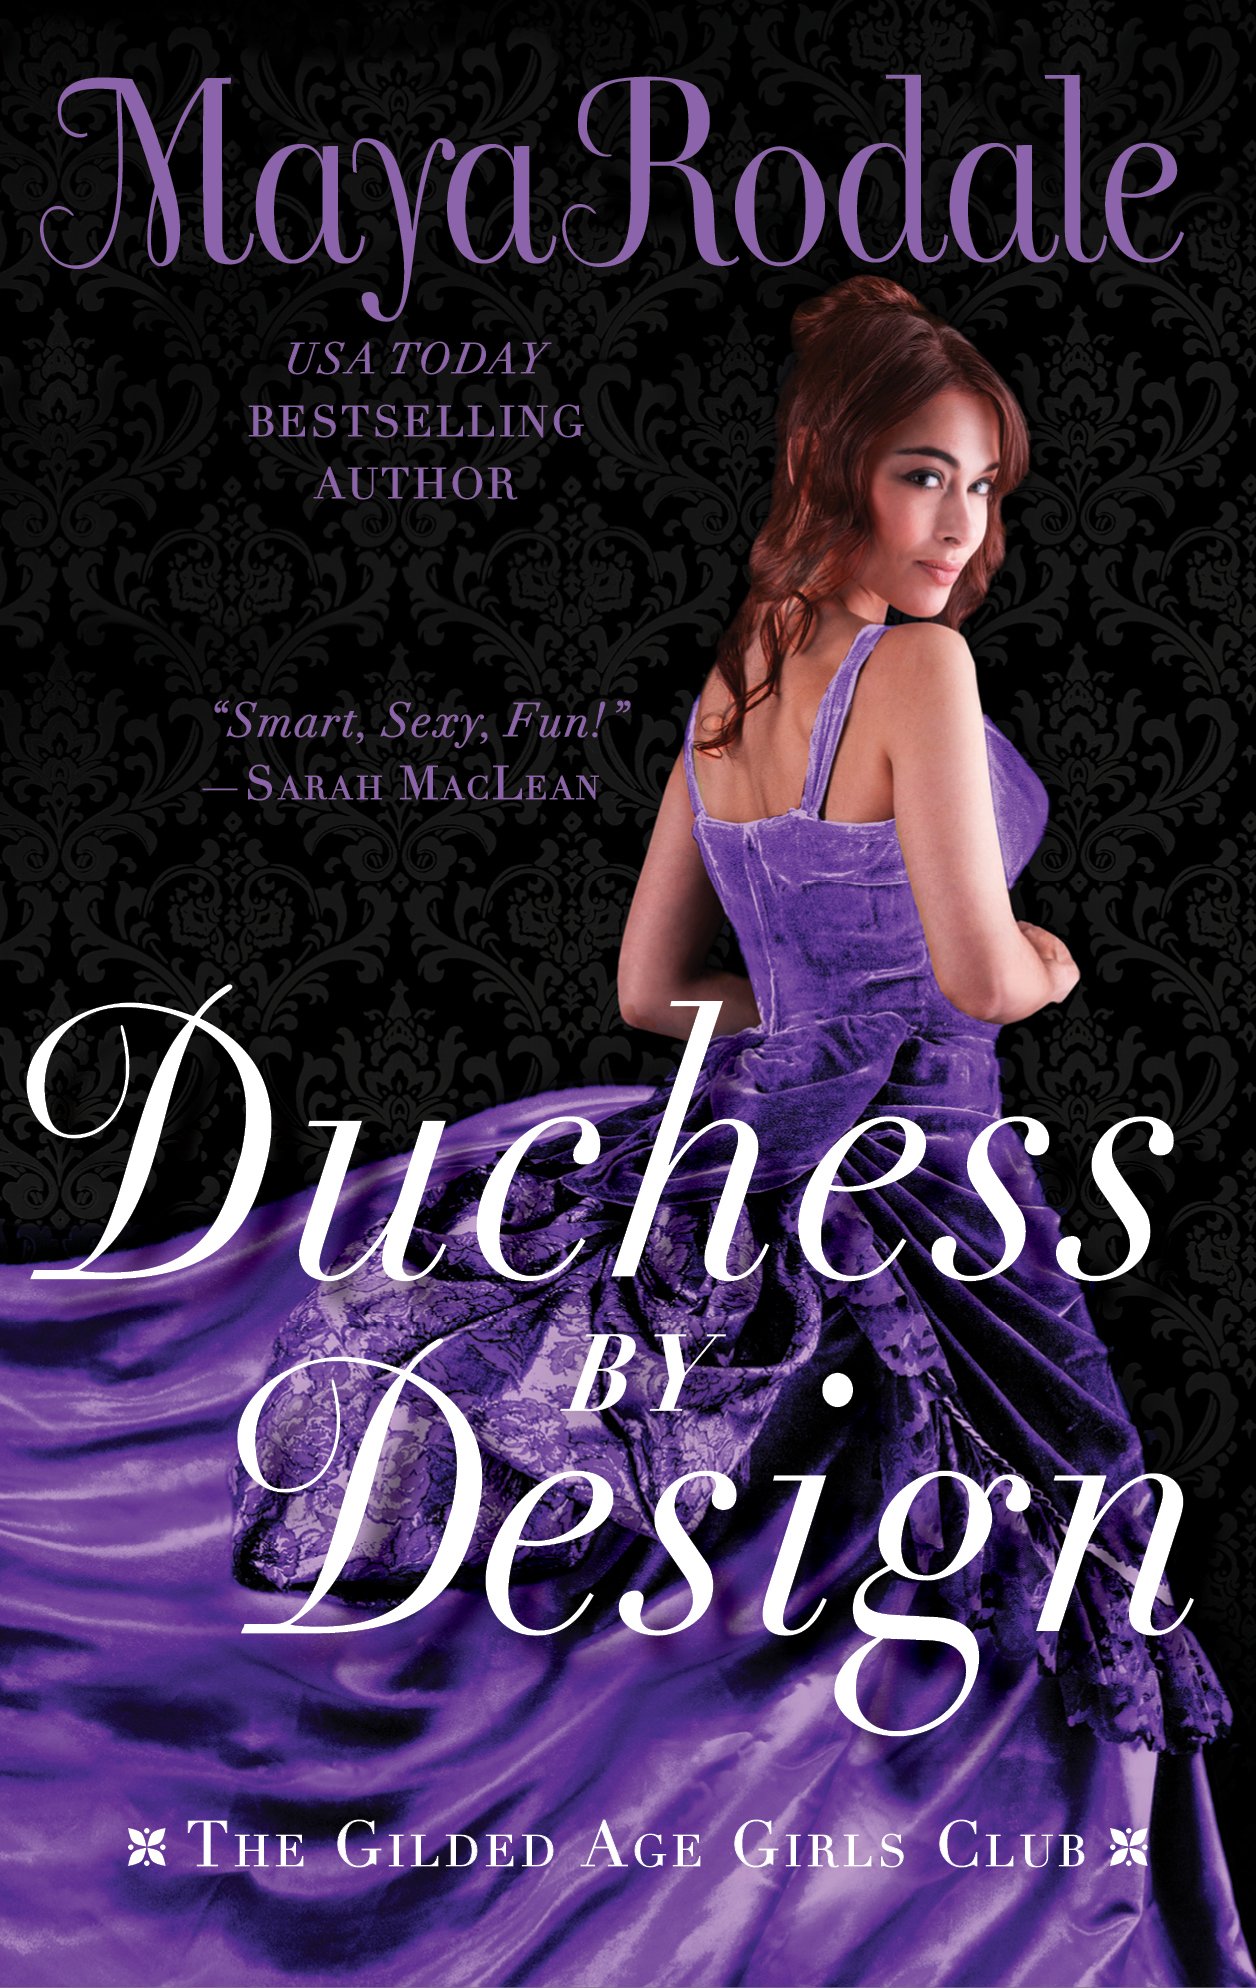 Duchess by Design